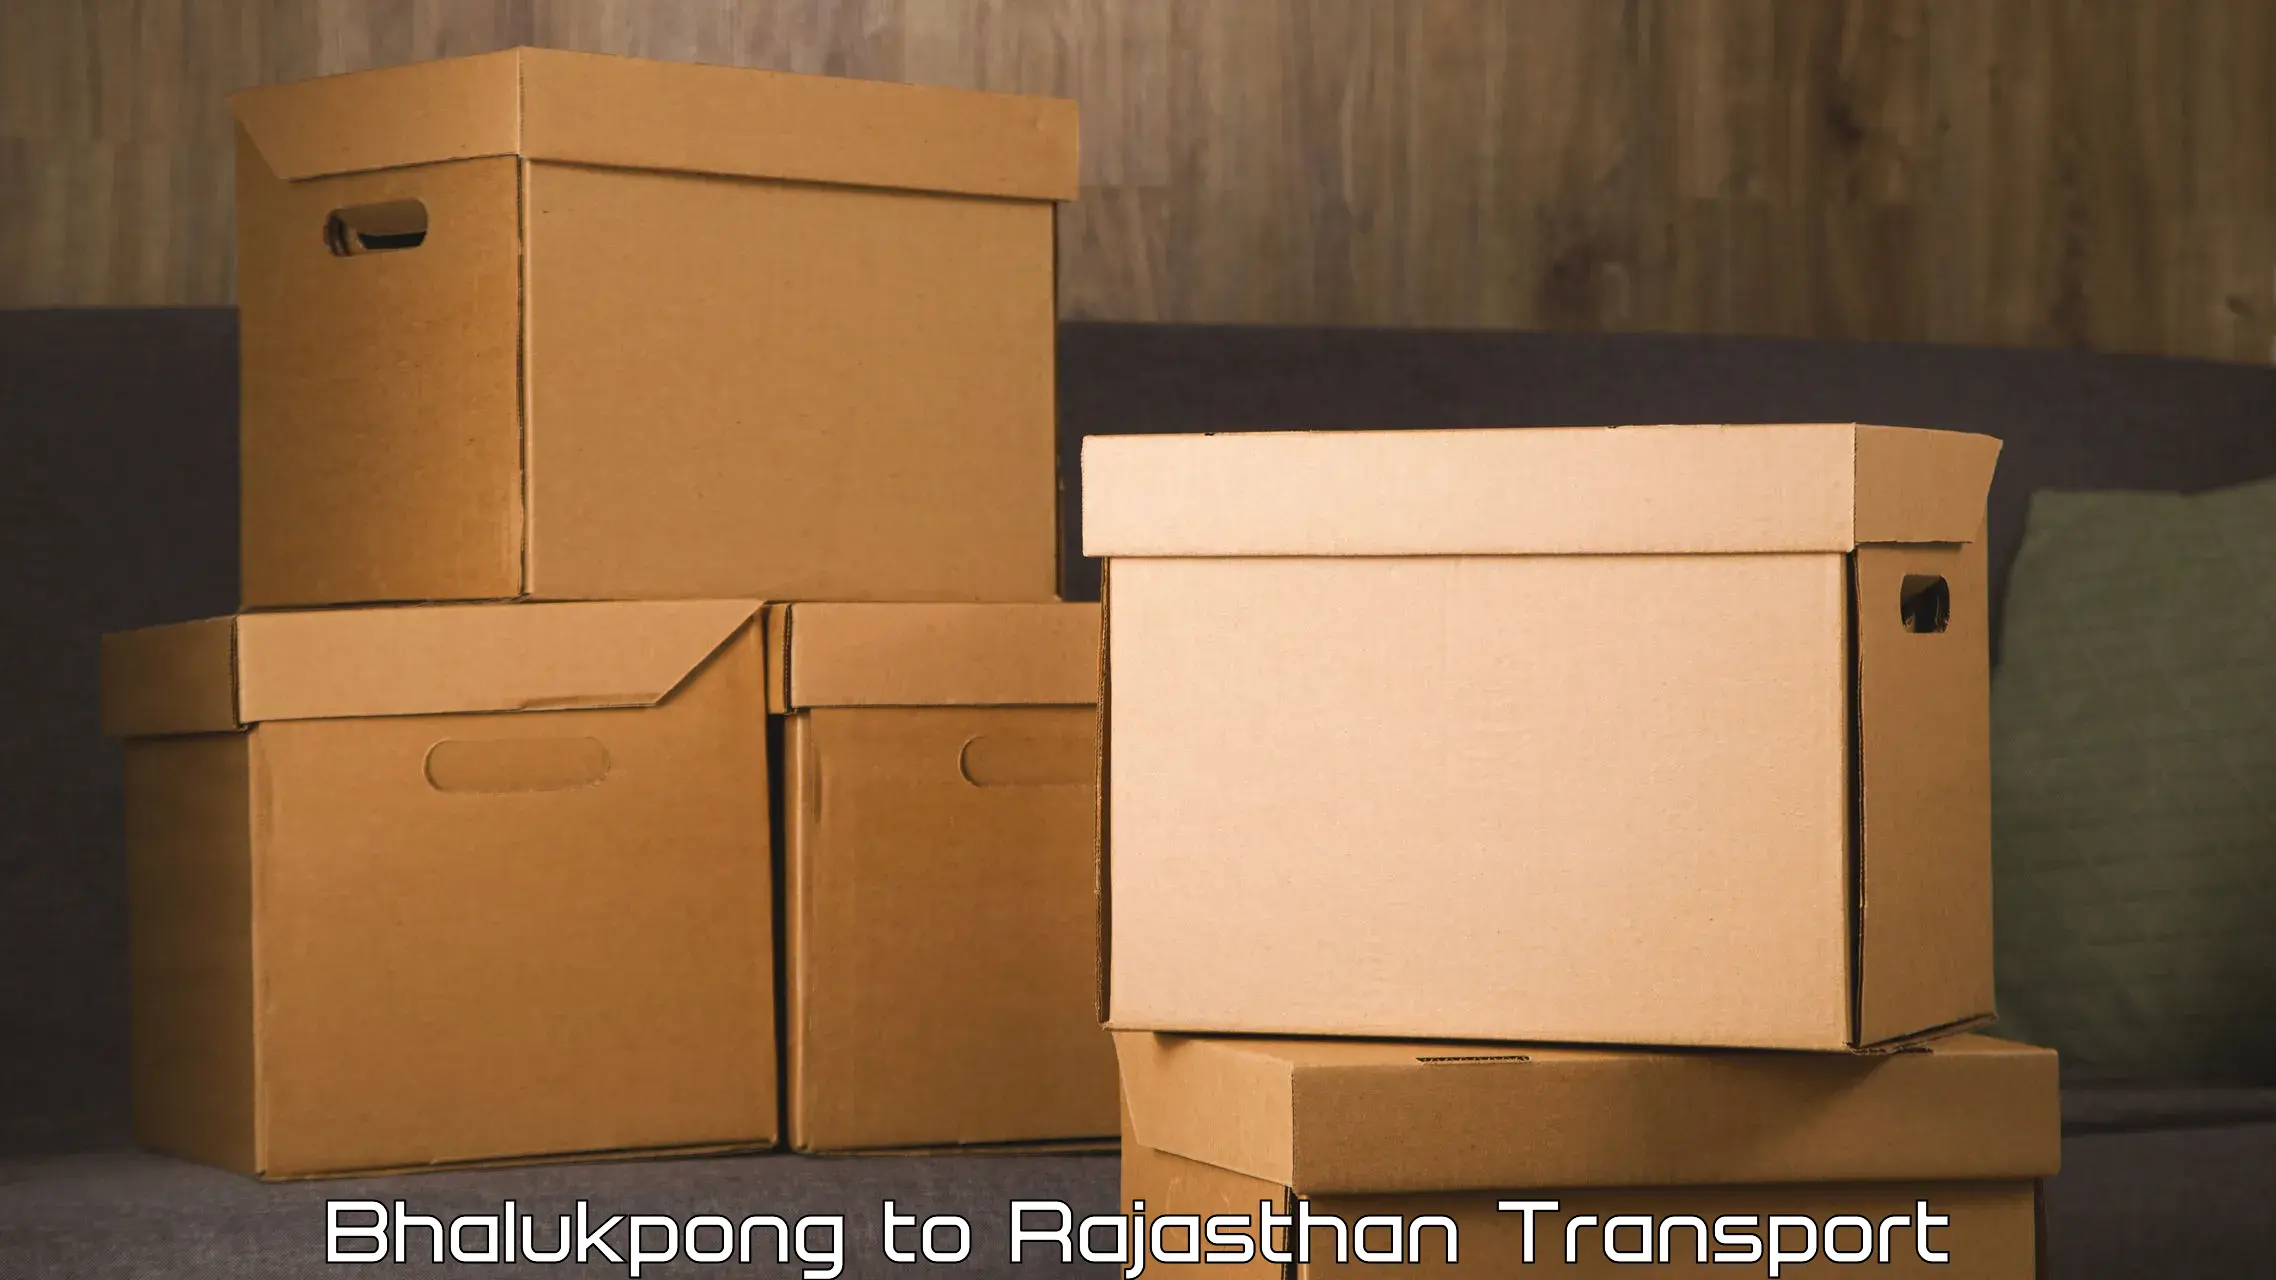 Furniture transport service Bhalukpong to Khinwara